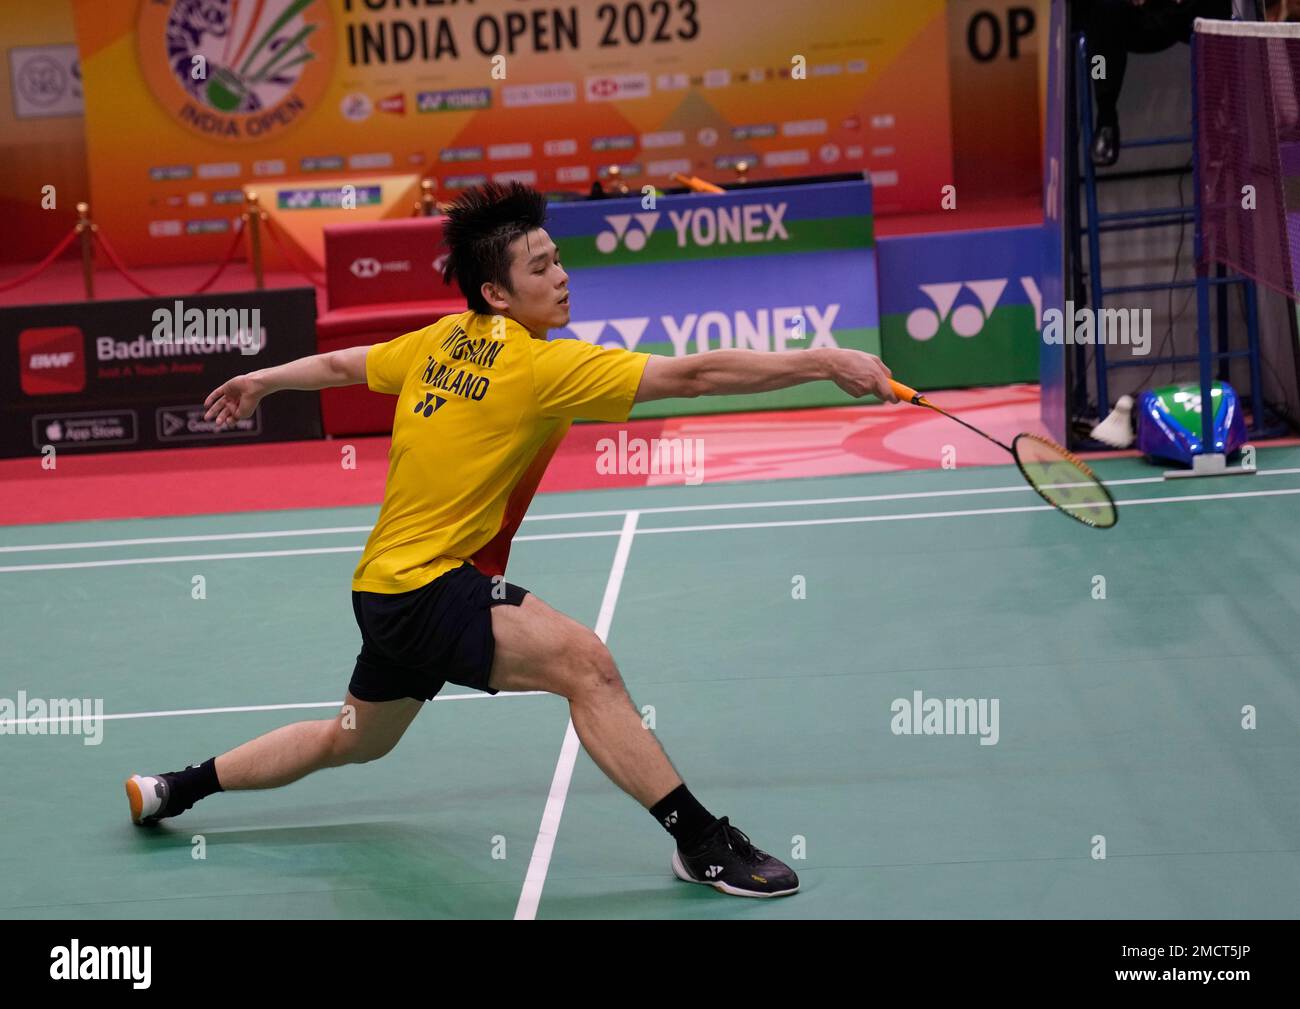 Thailands Kunlavut Vitidsarn competes against Denmarks Viktor Axelsen during the Yonex Sunrise India Open Badminton in New Delhi, India, Sunday, Jan. 22, 2023